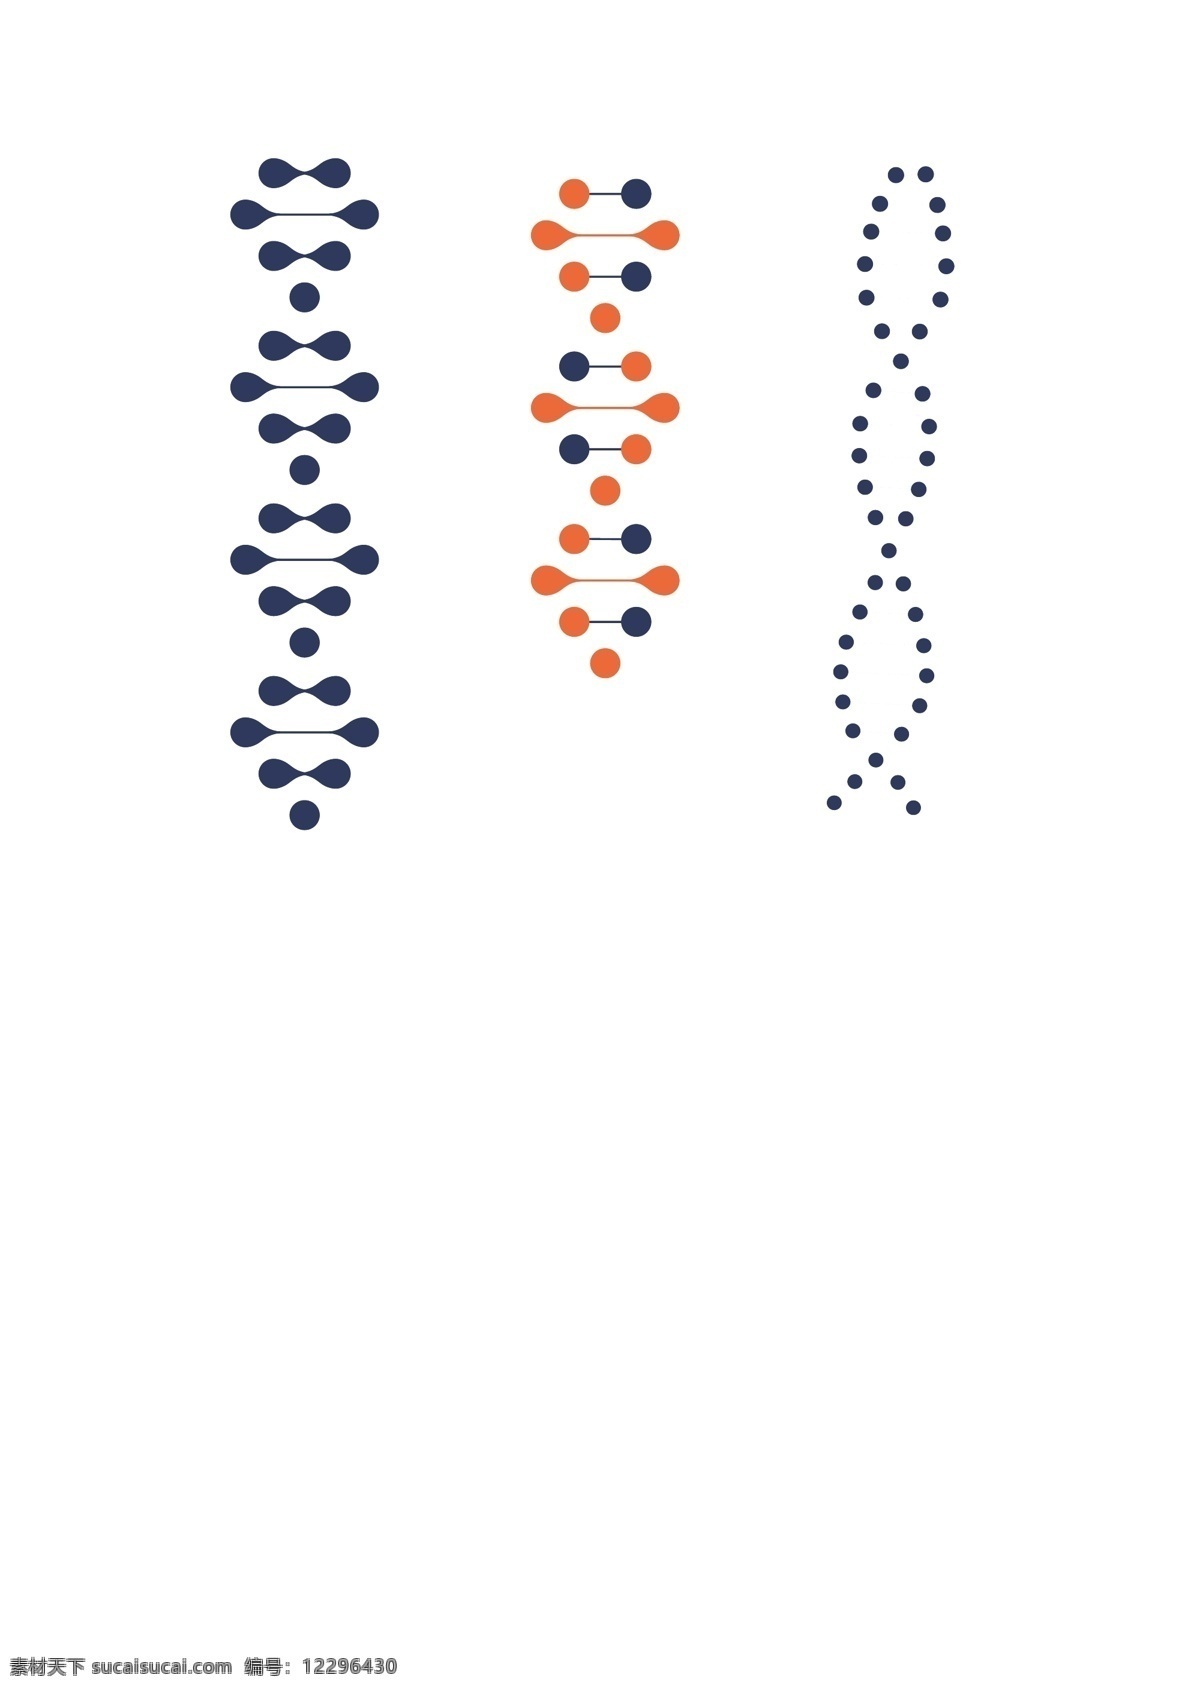 医学 基因 dna 生物 药物 医用 医疗 科学 基因链 基因检测 遗传物质 染色体 生命 纹理 标志图标 其他图标